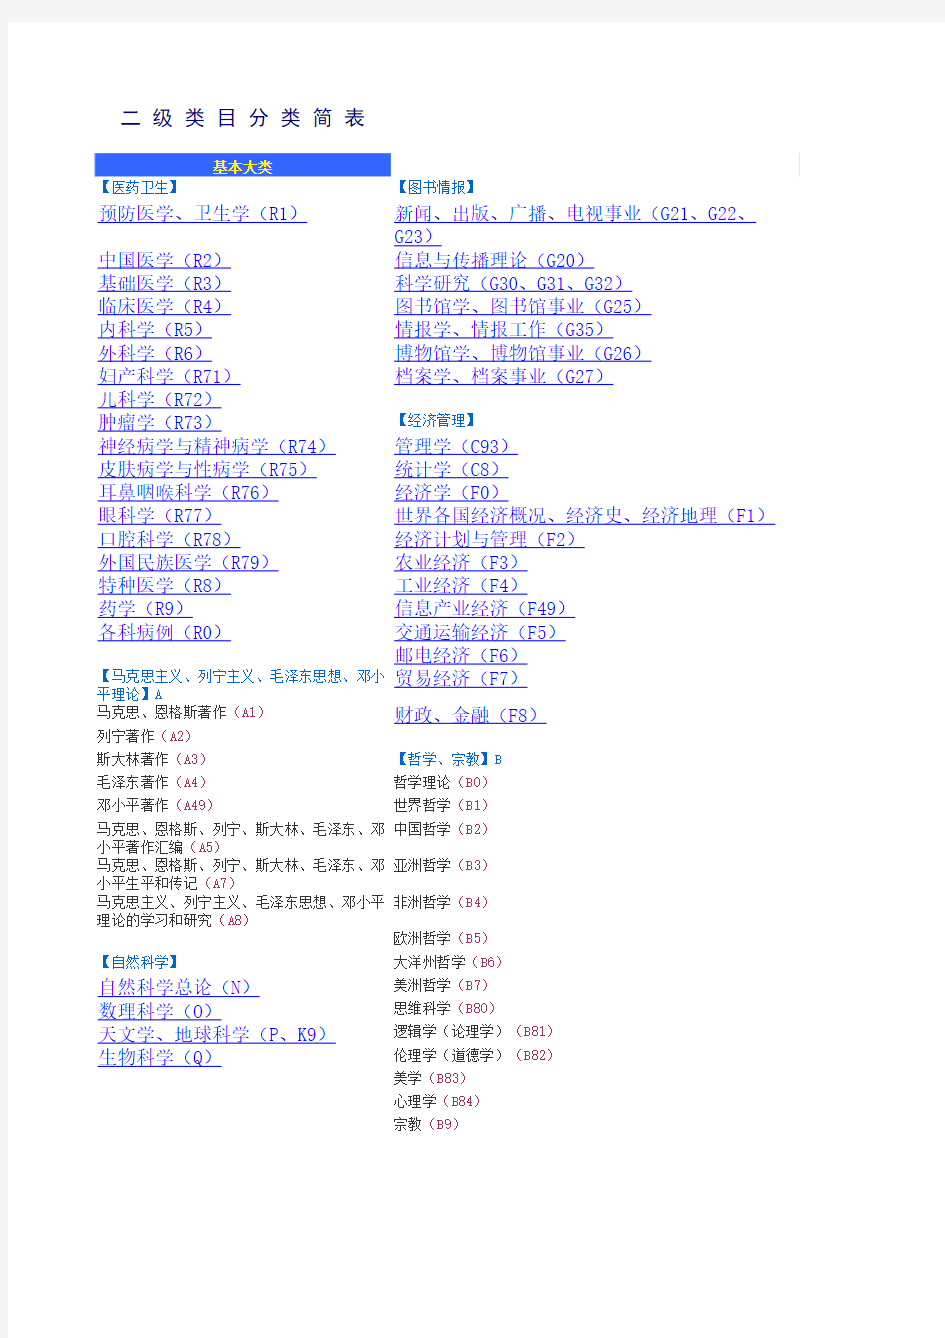 中国图书馆分类法简表